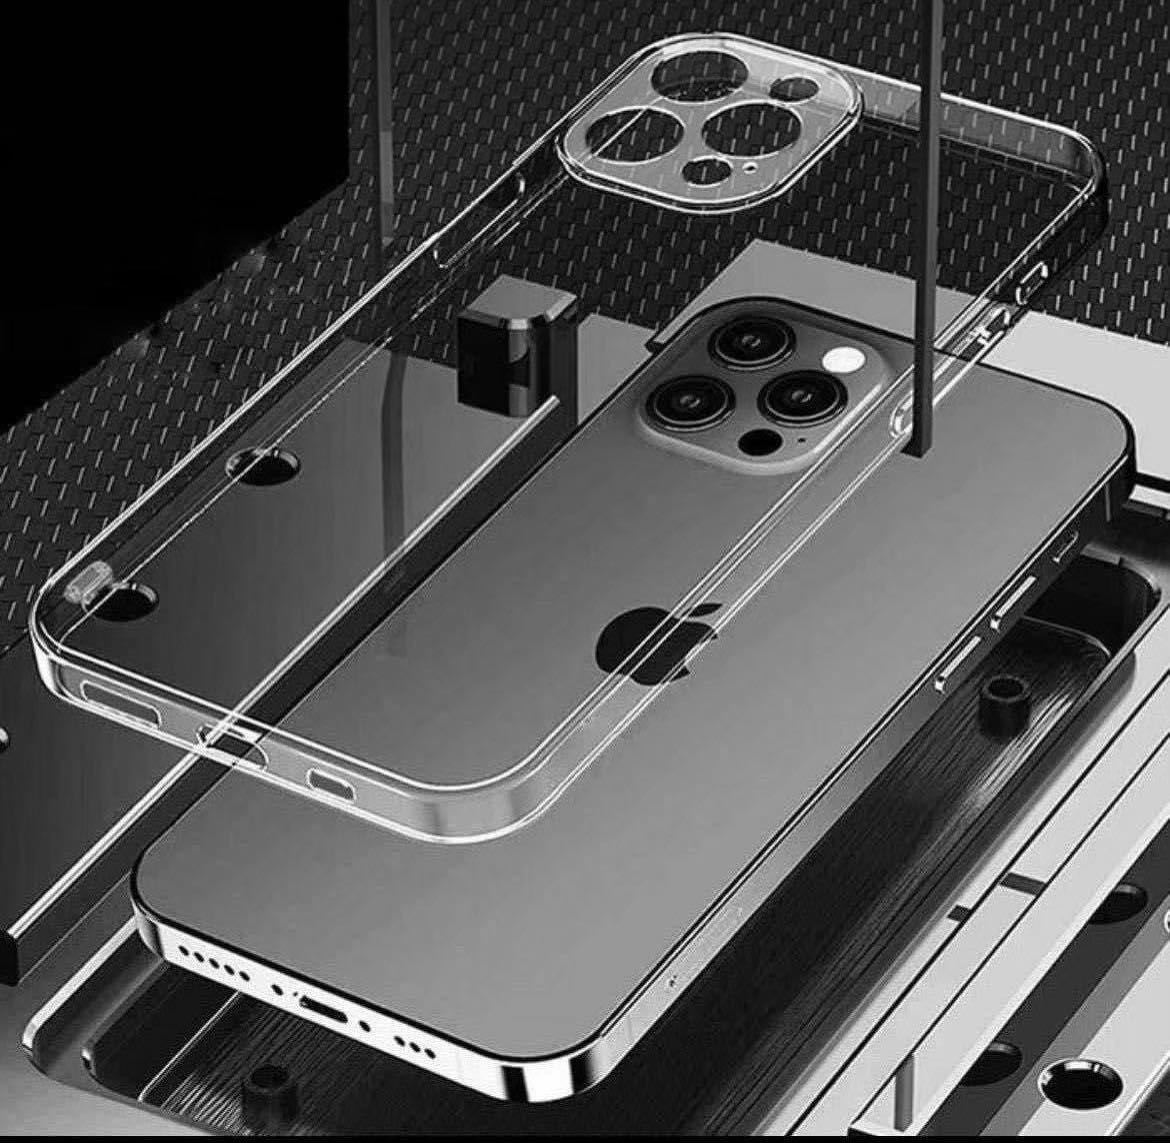 【iPhone14】カメラ保護付き耐衝撃クリアハードケース